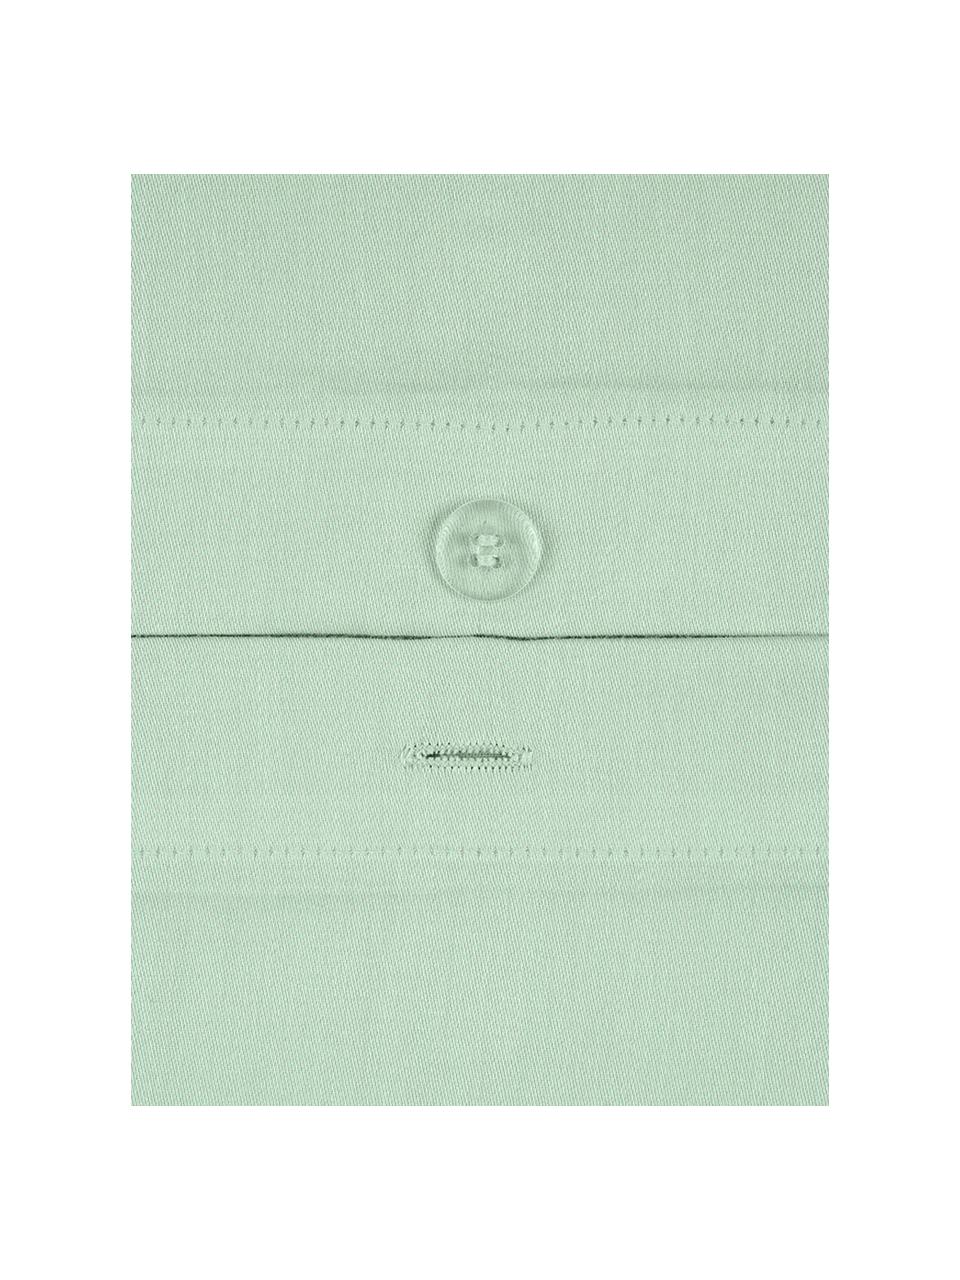 Parure copripiumino in raso di cotone Comfort, Verde salvia, 255 x 200 cm + 2 federe 50 x 80 cm